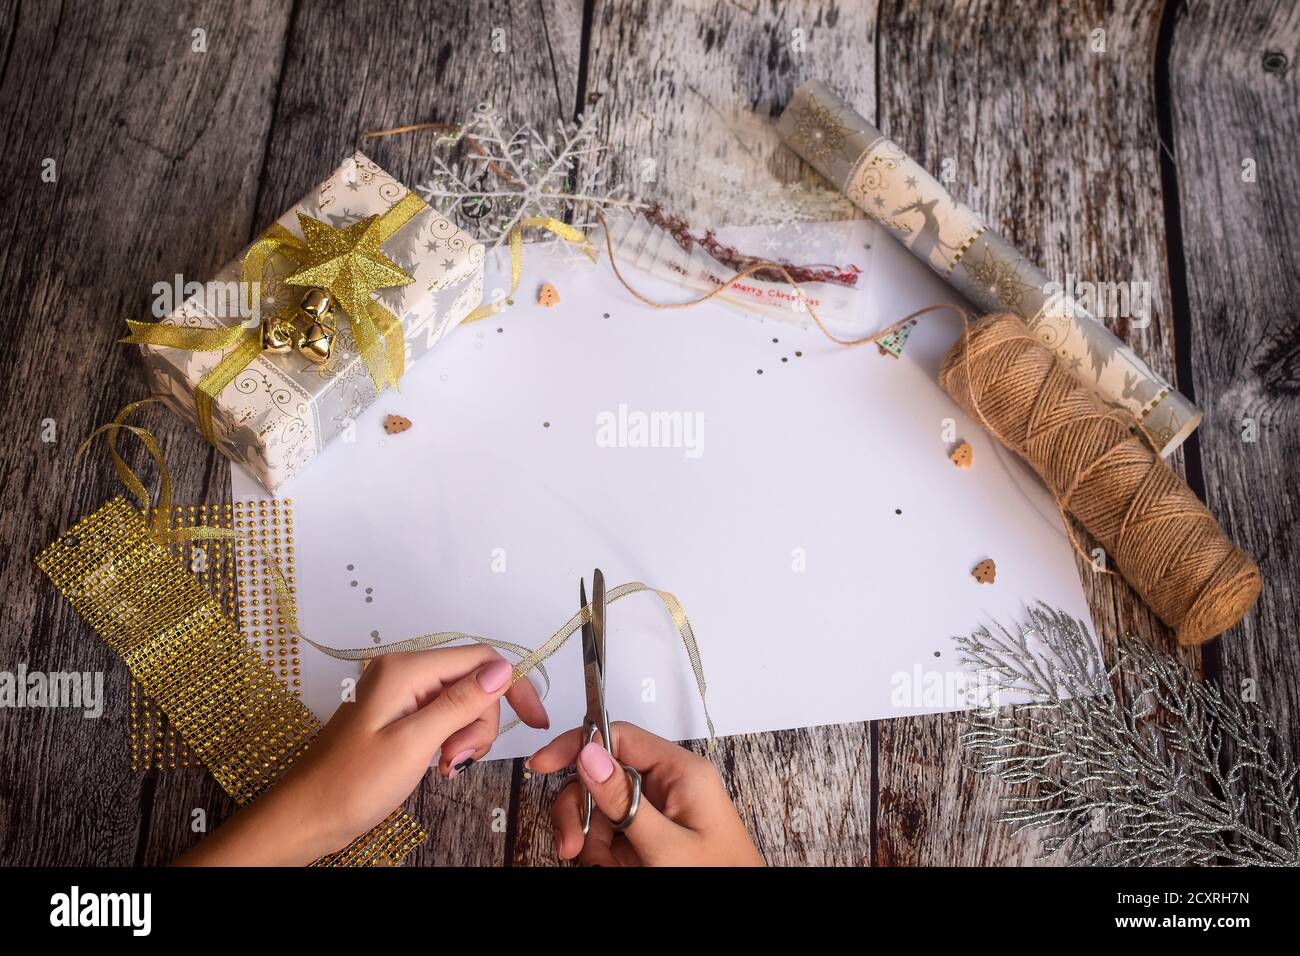 Vorbereitung auf Weihnachten. Die Hände des Mädchens schneiden das Band für Flat Lay mit einer Schere. Weißes leeres Blatt in der Mitte für die Inschrift. Stockfoto